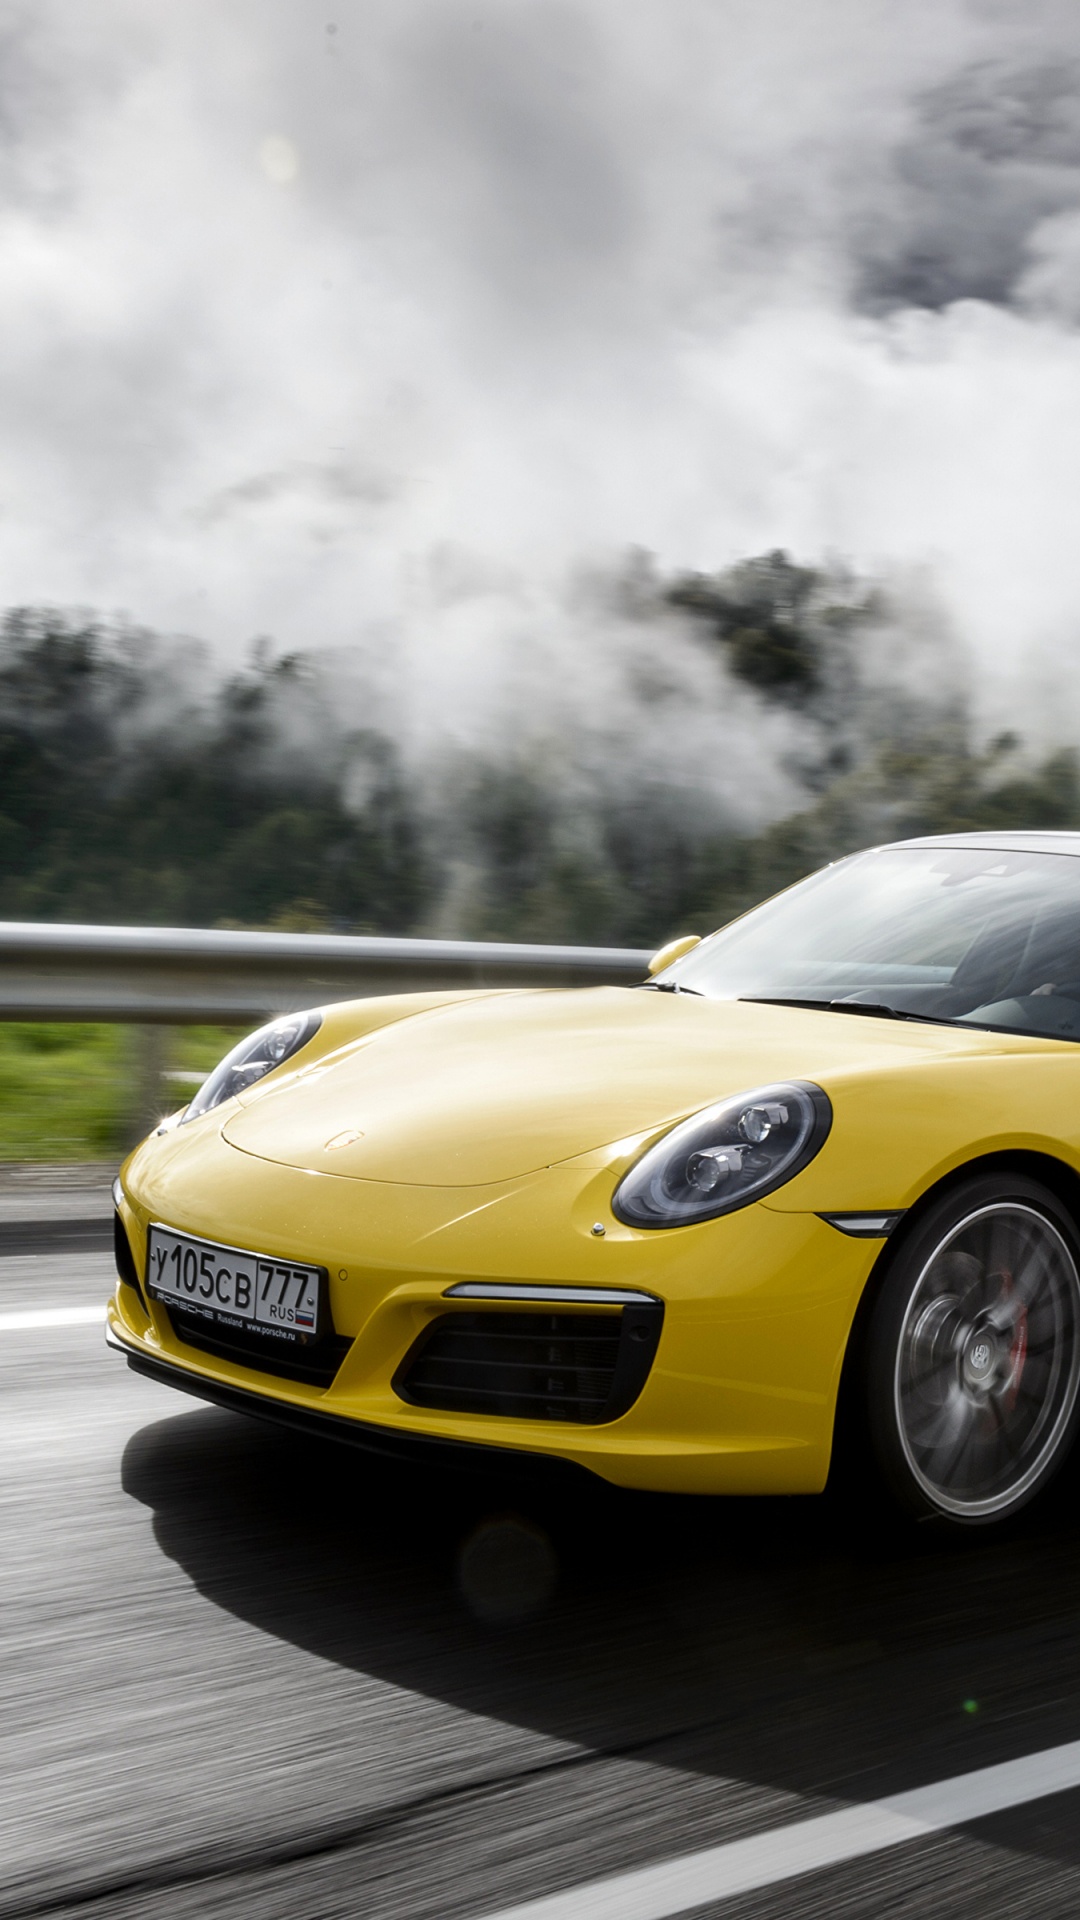 Porsche 911 Jaune Sur Route Pendant la Journée. Wallpaper in 1080x1920 Resolution